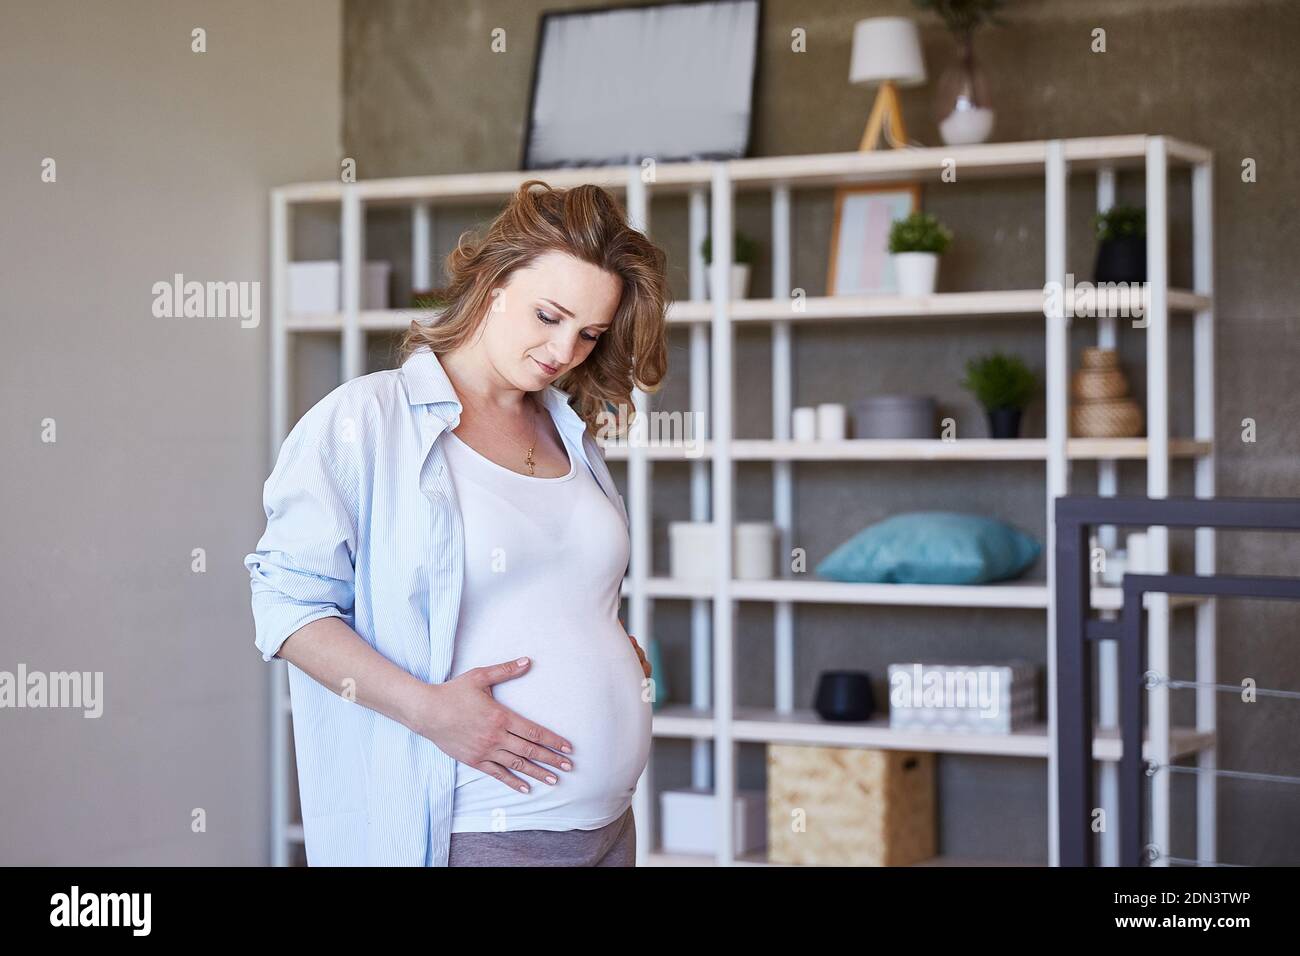 Ein charmantes schwangeres Mädchen schaut auf ihren Bauch und bewundert das Baby in ihrem Bauch. Attraktive Mädchen fühlt sich Glück und gute Gesundheit. Eine schöne Frau Stockfoto